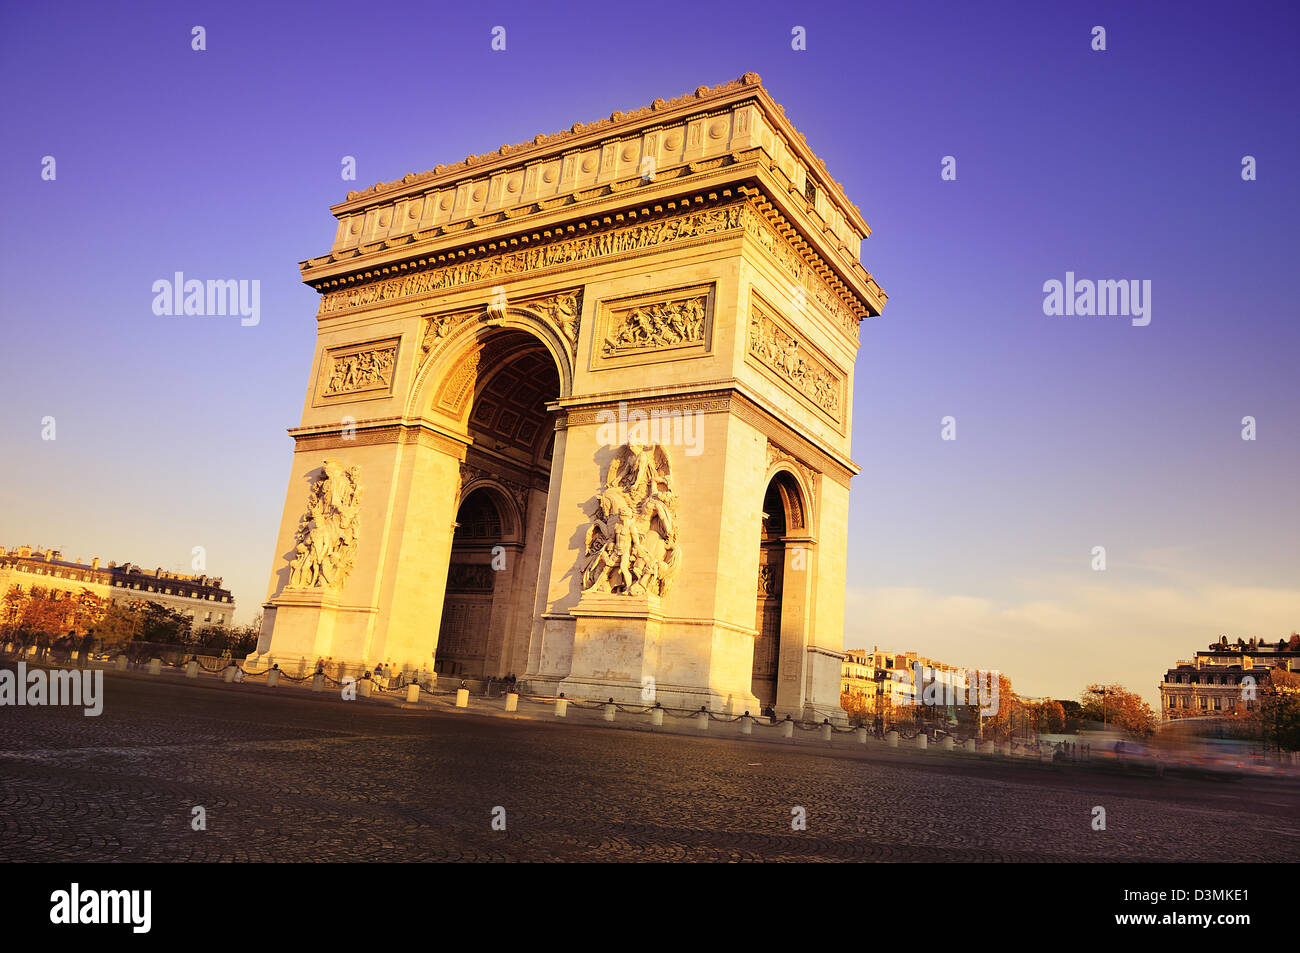 Arco di Trionfo sulla piazza Charles de Gaulle. Parigi, Francia Foto Stock